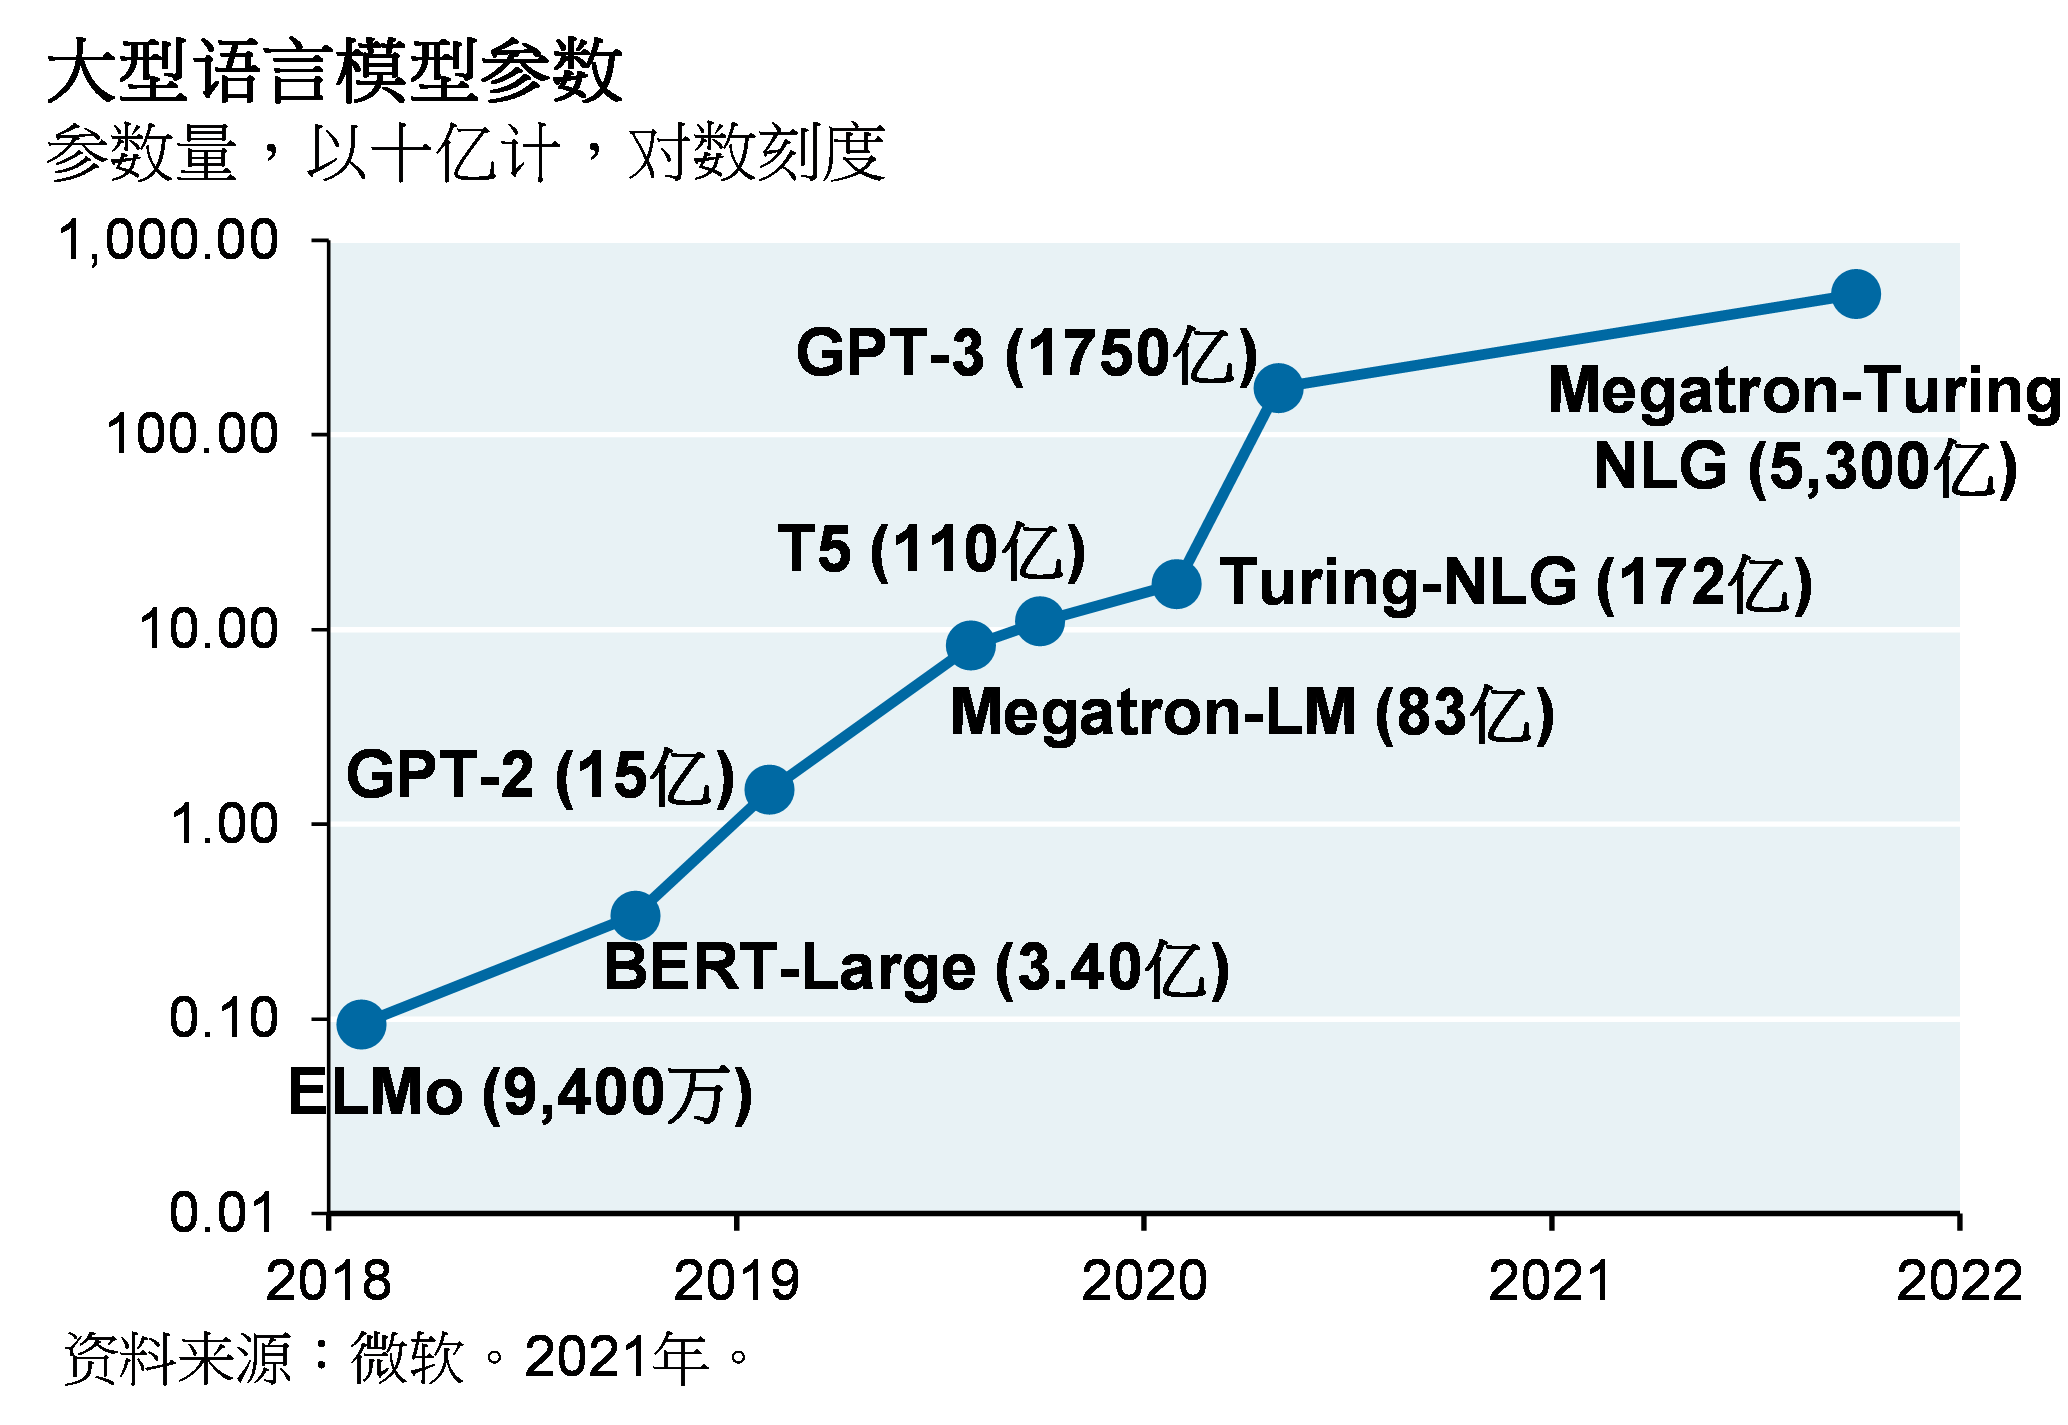 线图显示，2018年至今，大型语言模型的参数数量呈指数级增长。英伟达的Megatron-Turing NLG拥有5,300亿个参数；相比之下，OpenAI的ChatGPT拥有1,750亿个参数。